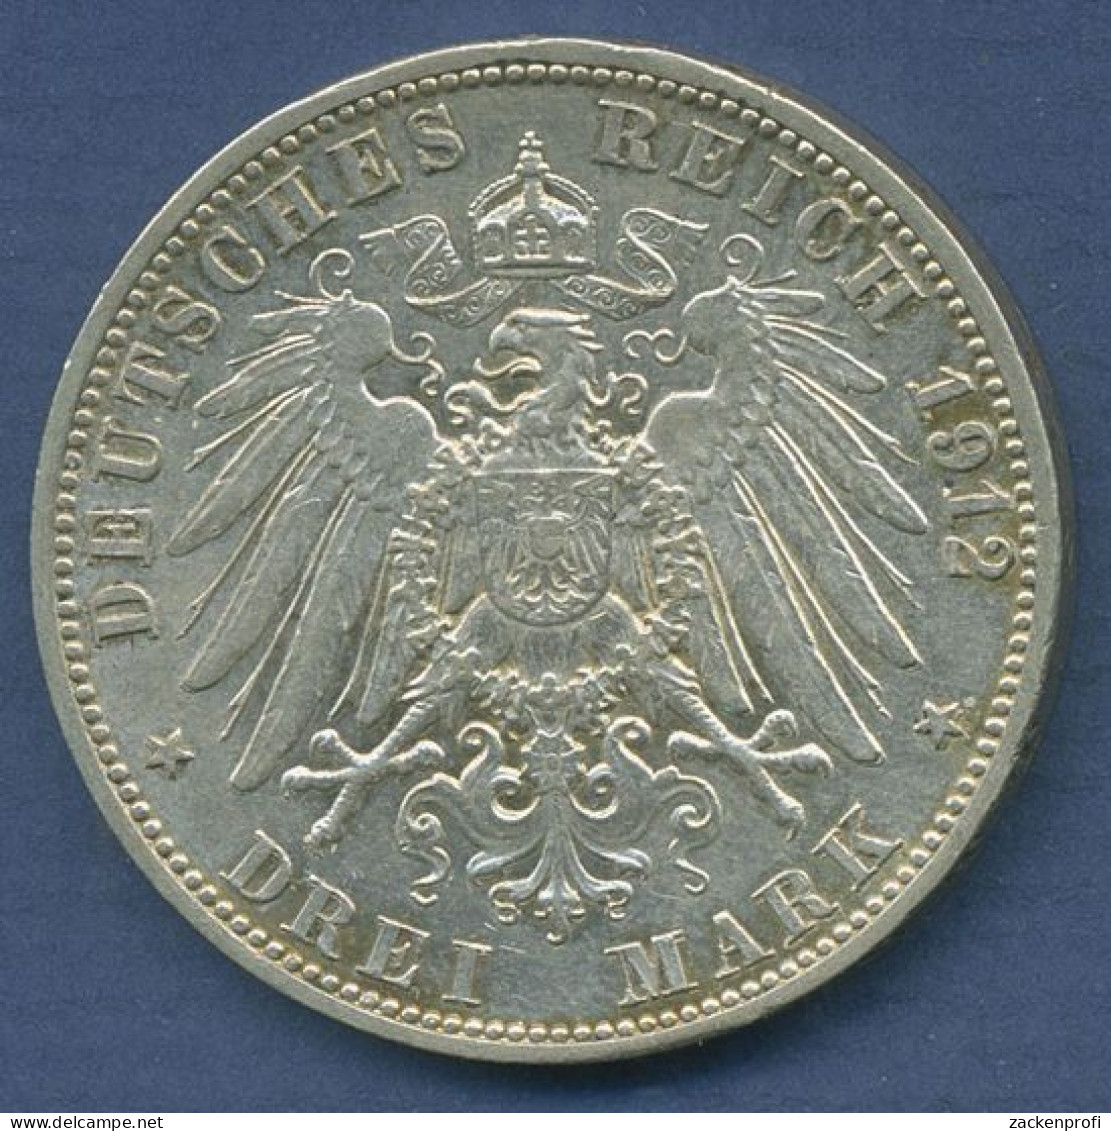 Baden 3 Mark 1912 G, Großherzog Friedrich II., J 39 Vz/vz+ (m6274) - 2, 3 & 5 Mark Plata